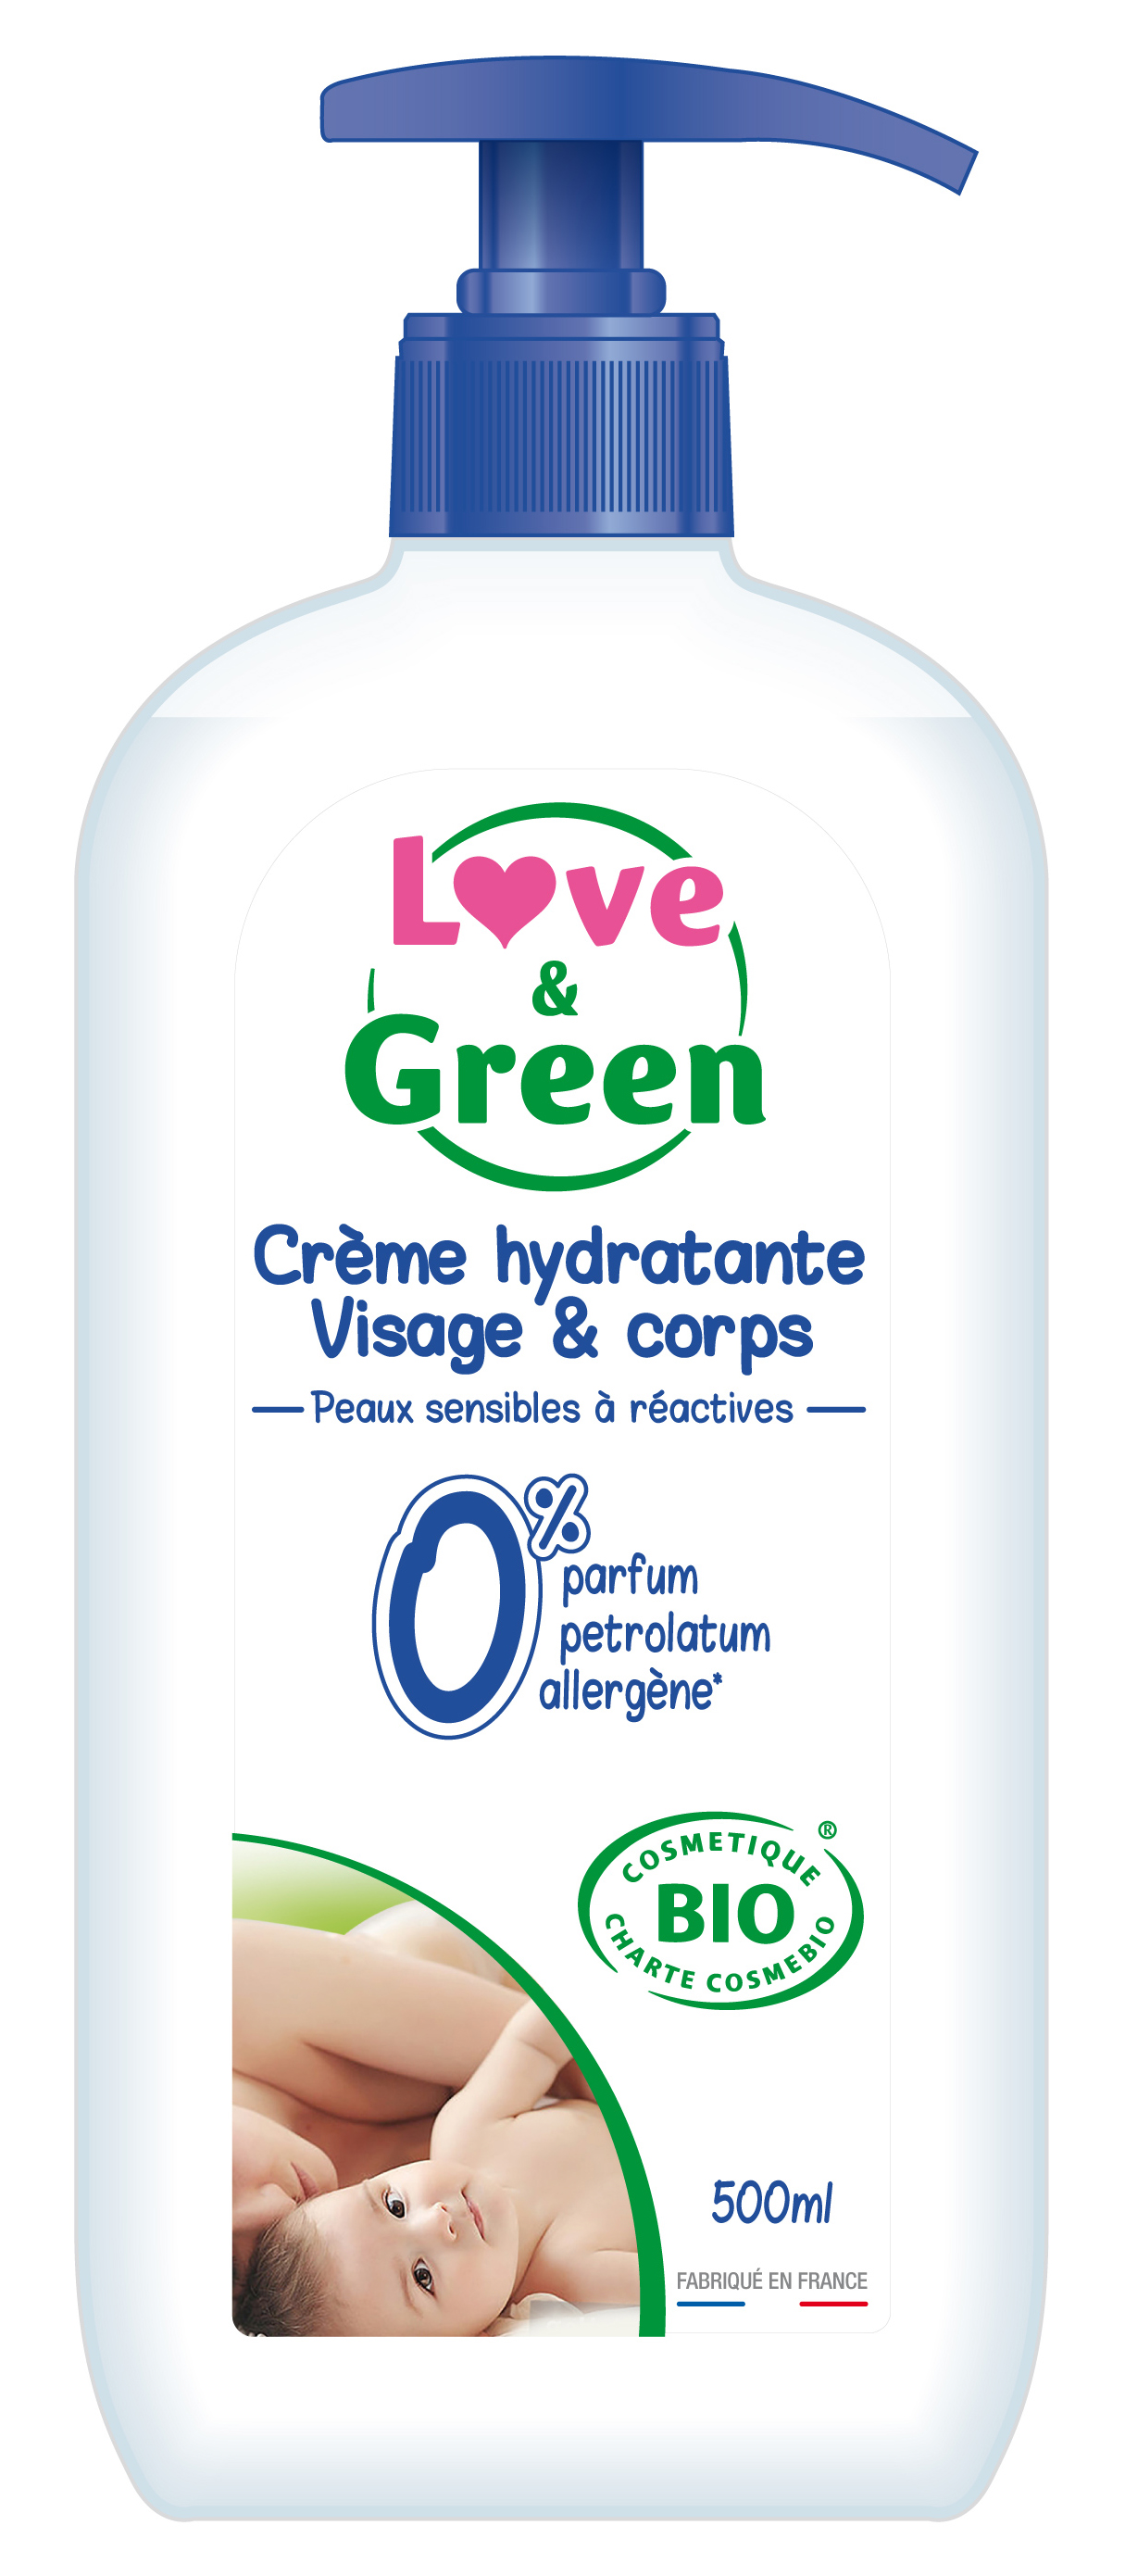 Crème hydratante non comédogène, bio & sans parfum